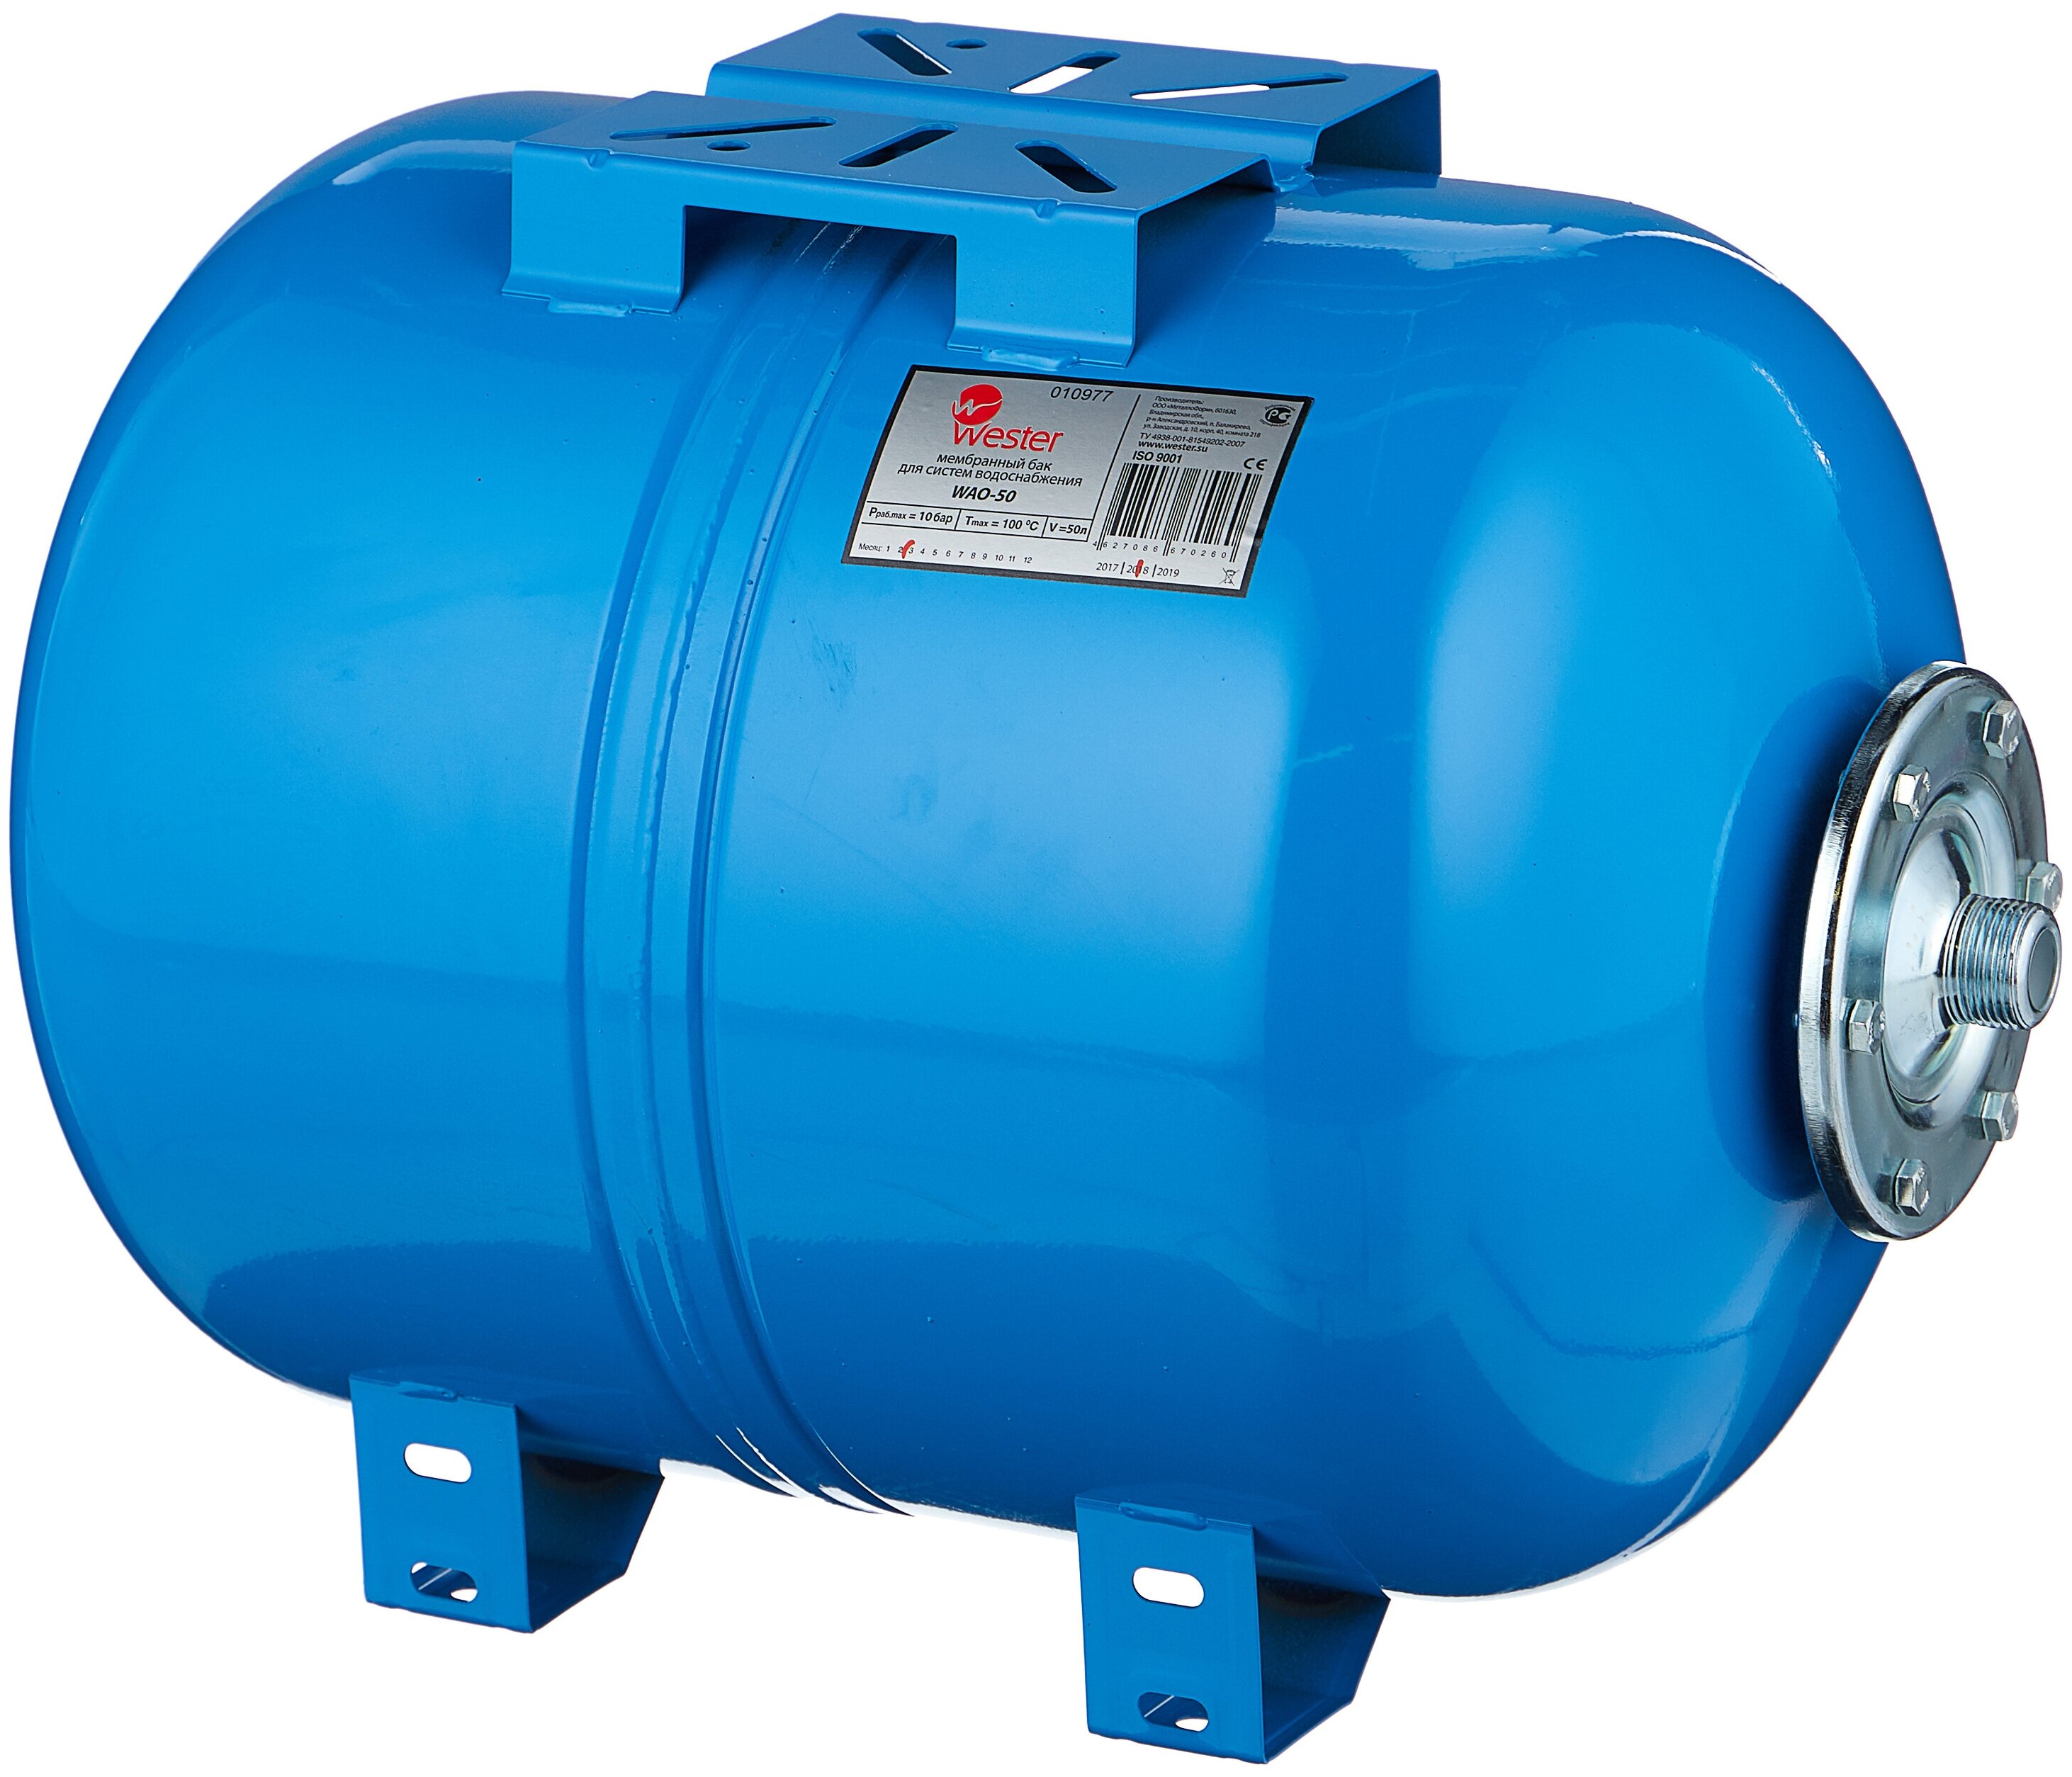 Гидроаккумулятор для водоснабжения WESTER WAO 50л горизонтальный  — купить инженерную сантехнику в Кургане, цены в интернет-магазине «АкваТехника»